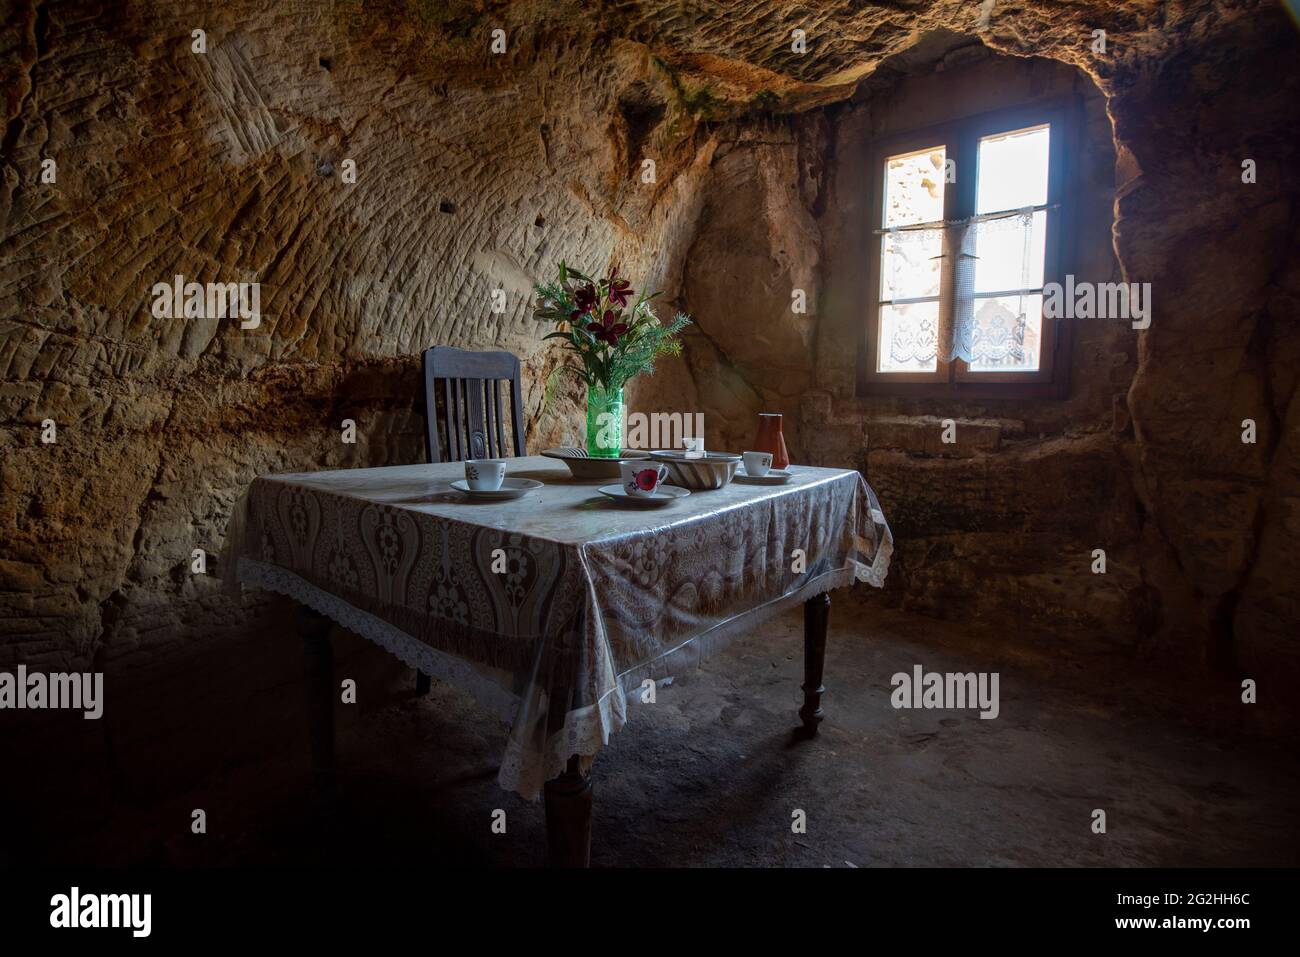 Germania, Sassonia-Anhalt, Langenstein, ha posato il tavolo in una delle abitazioni rupestri di Langenstein, scolpito in arenaria da lavoratori migranti nel 19 ° secolo, ora accessibile ai visitatori, Harz. Foto Stock